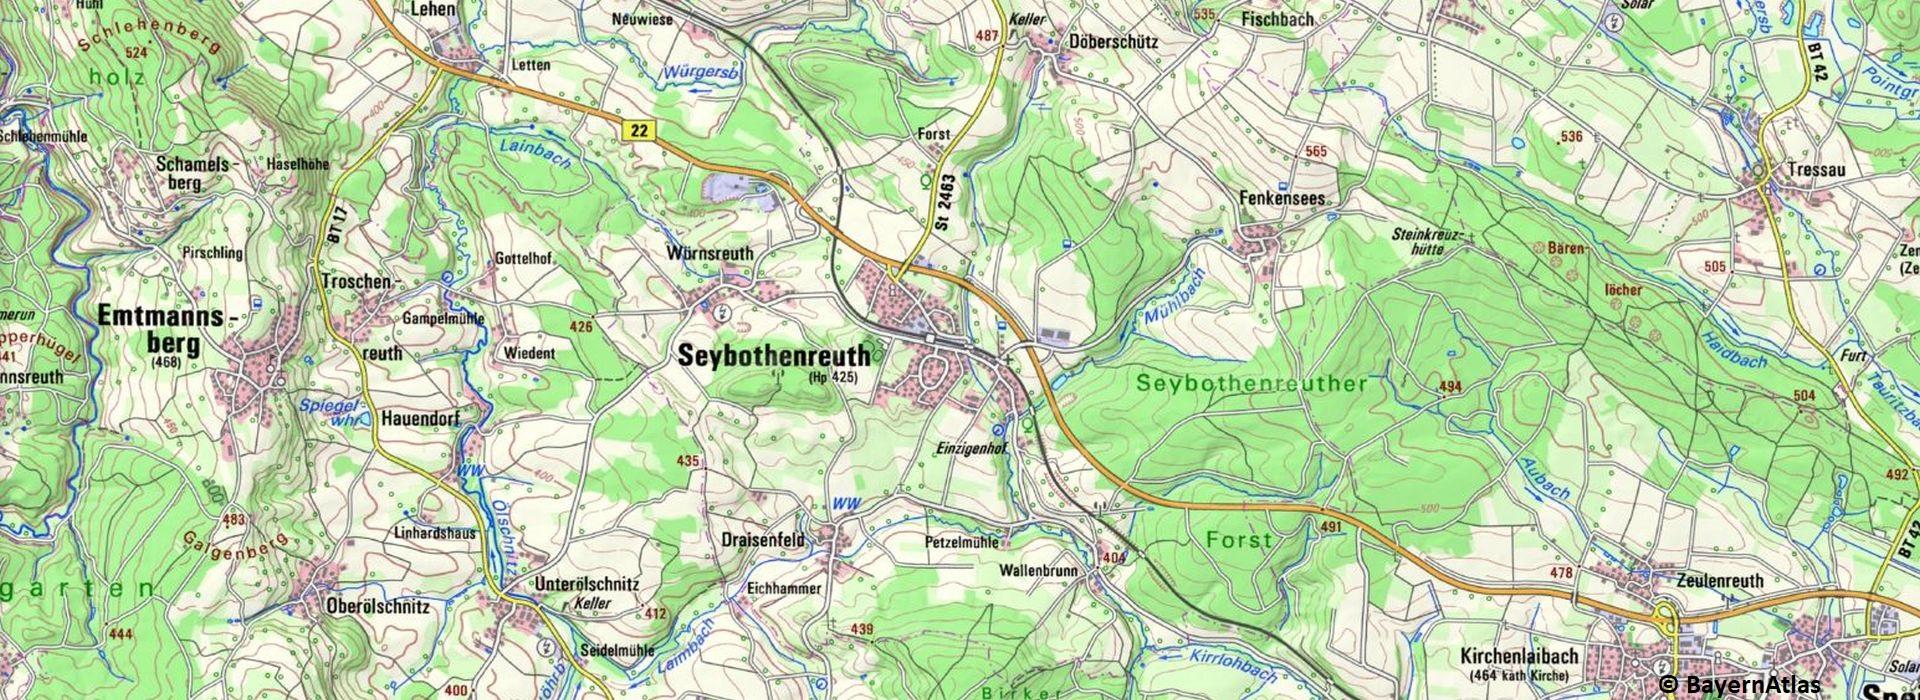 Ausschnitt Seybothenreuth aus dem BayernAtlas